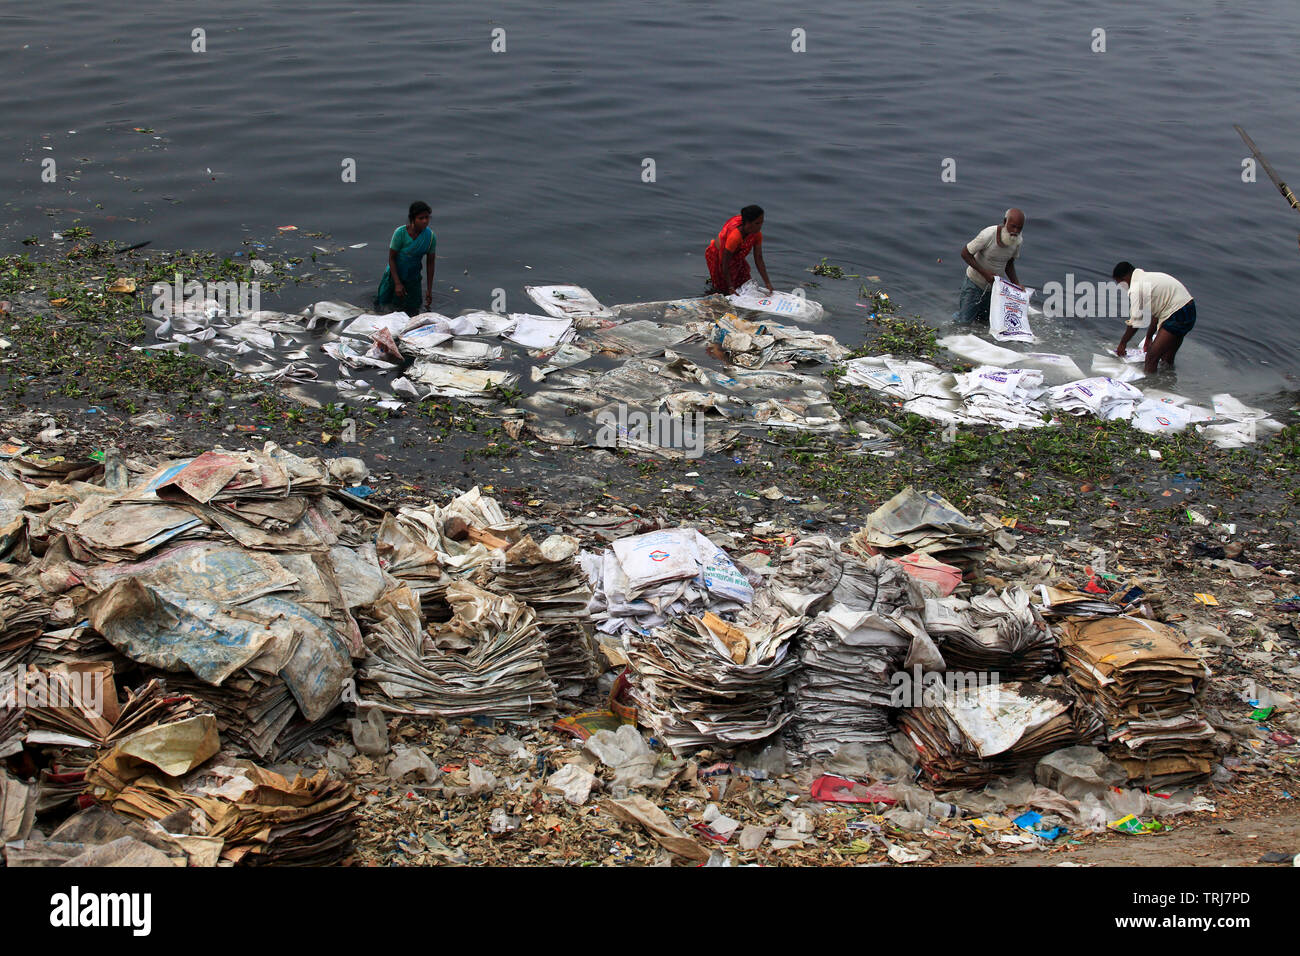 Arbeiter waschen Polyäthylenbeutel, die benutzt wurden, um Chemikalien zu tragen, in der buriganga Fluss für das Recycling. Dhaka, Bangladesch Stockfoto